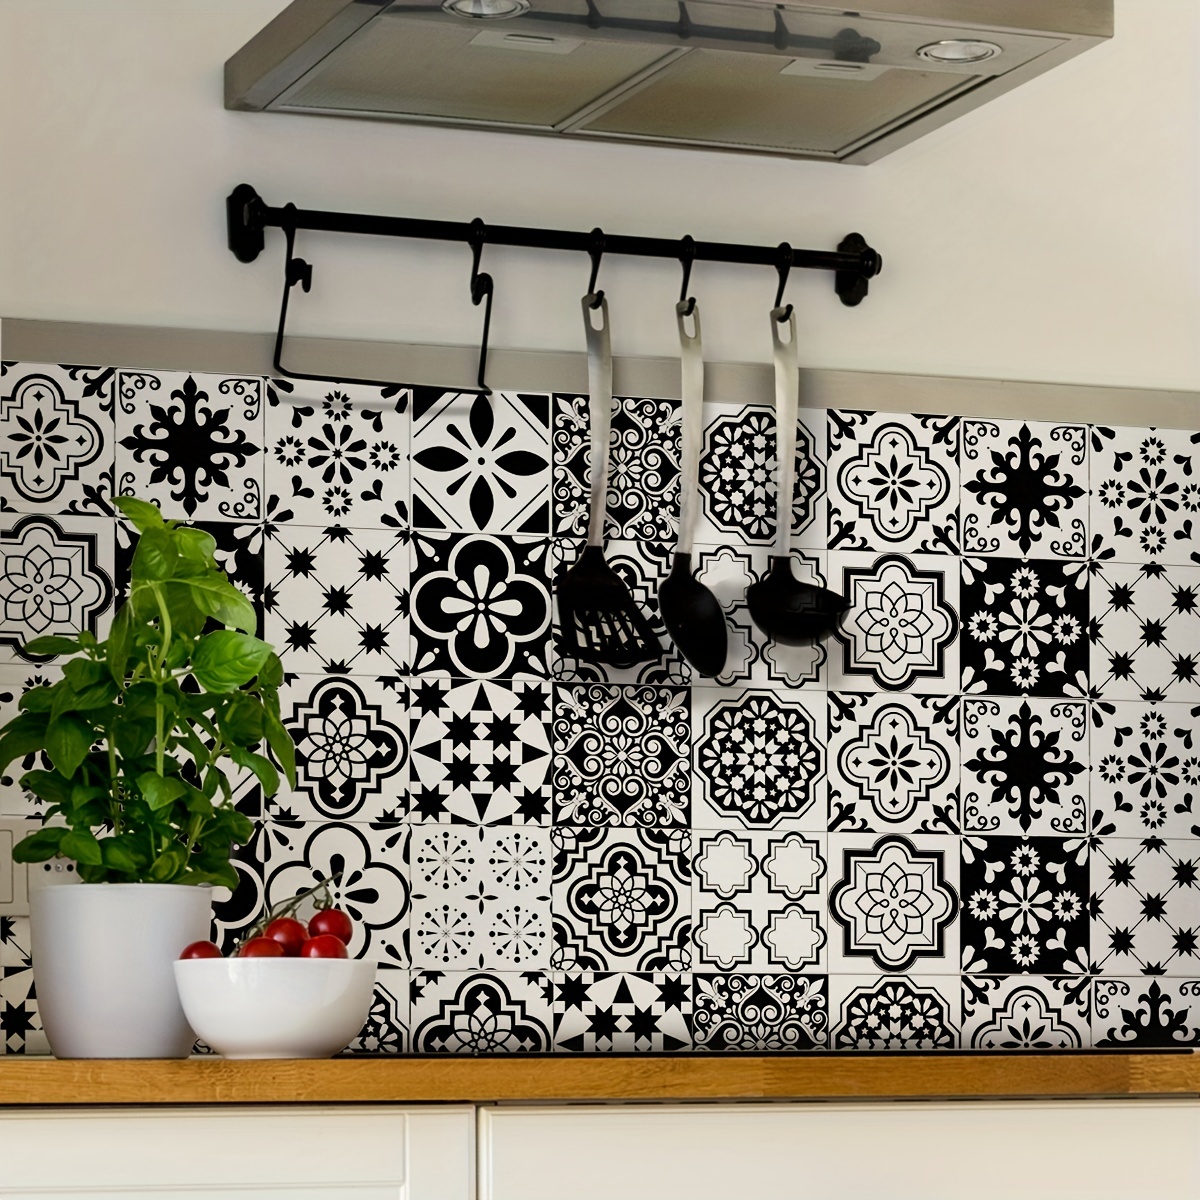 Cenefa auto-adhesiva, Decoración de pared cocina & baño, 5 m x 15 cm